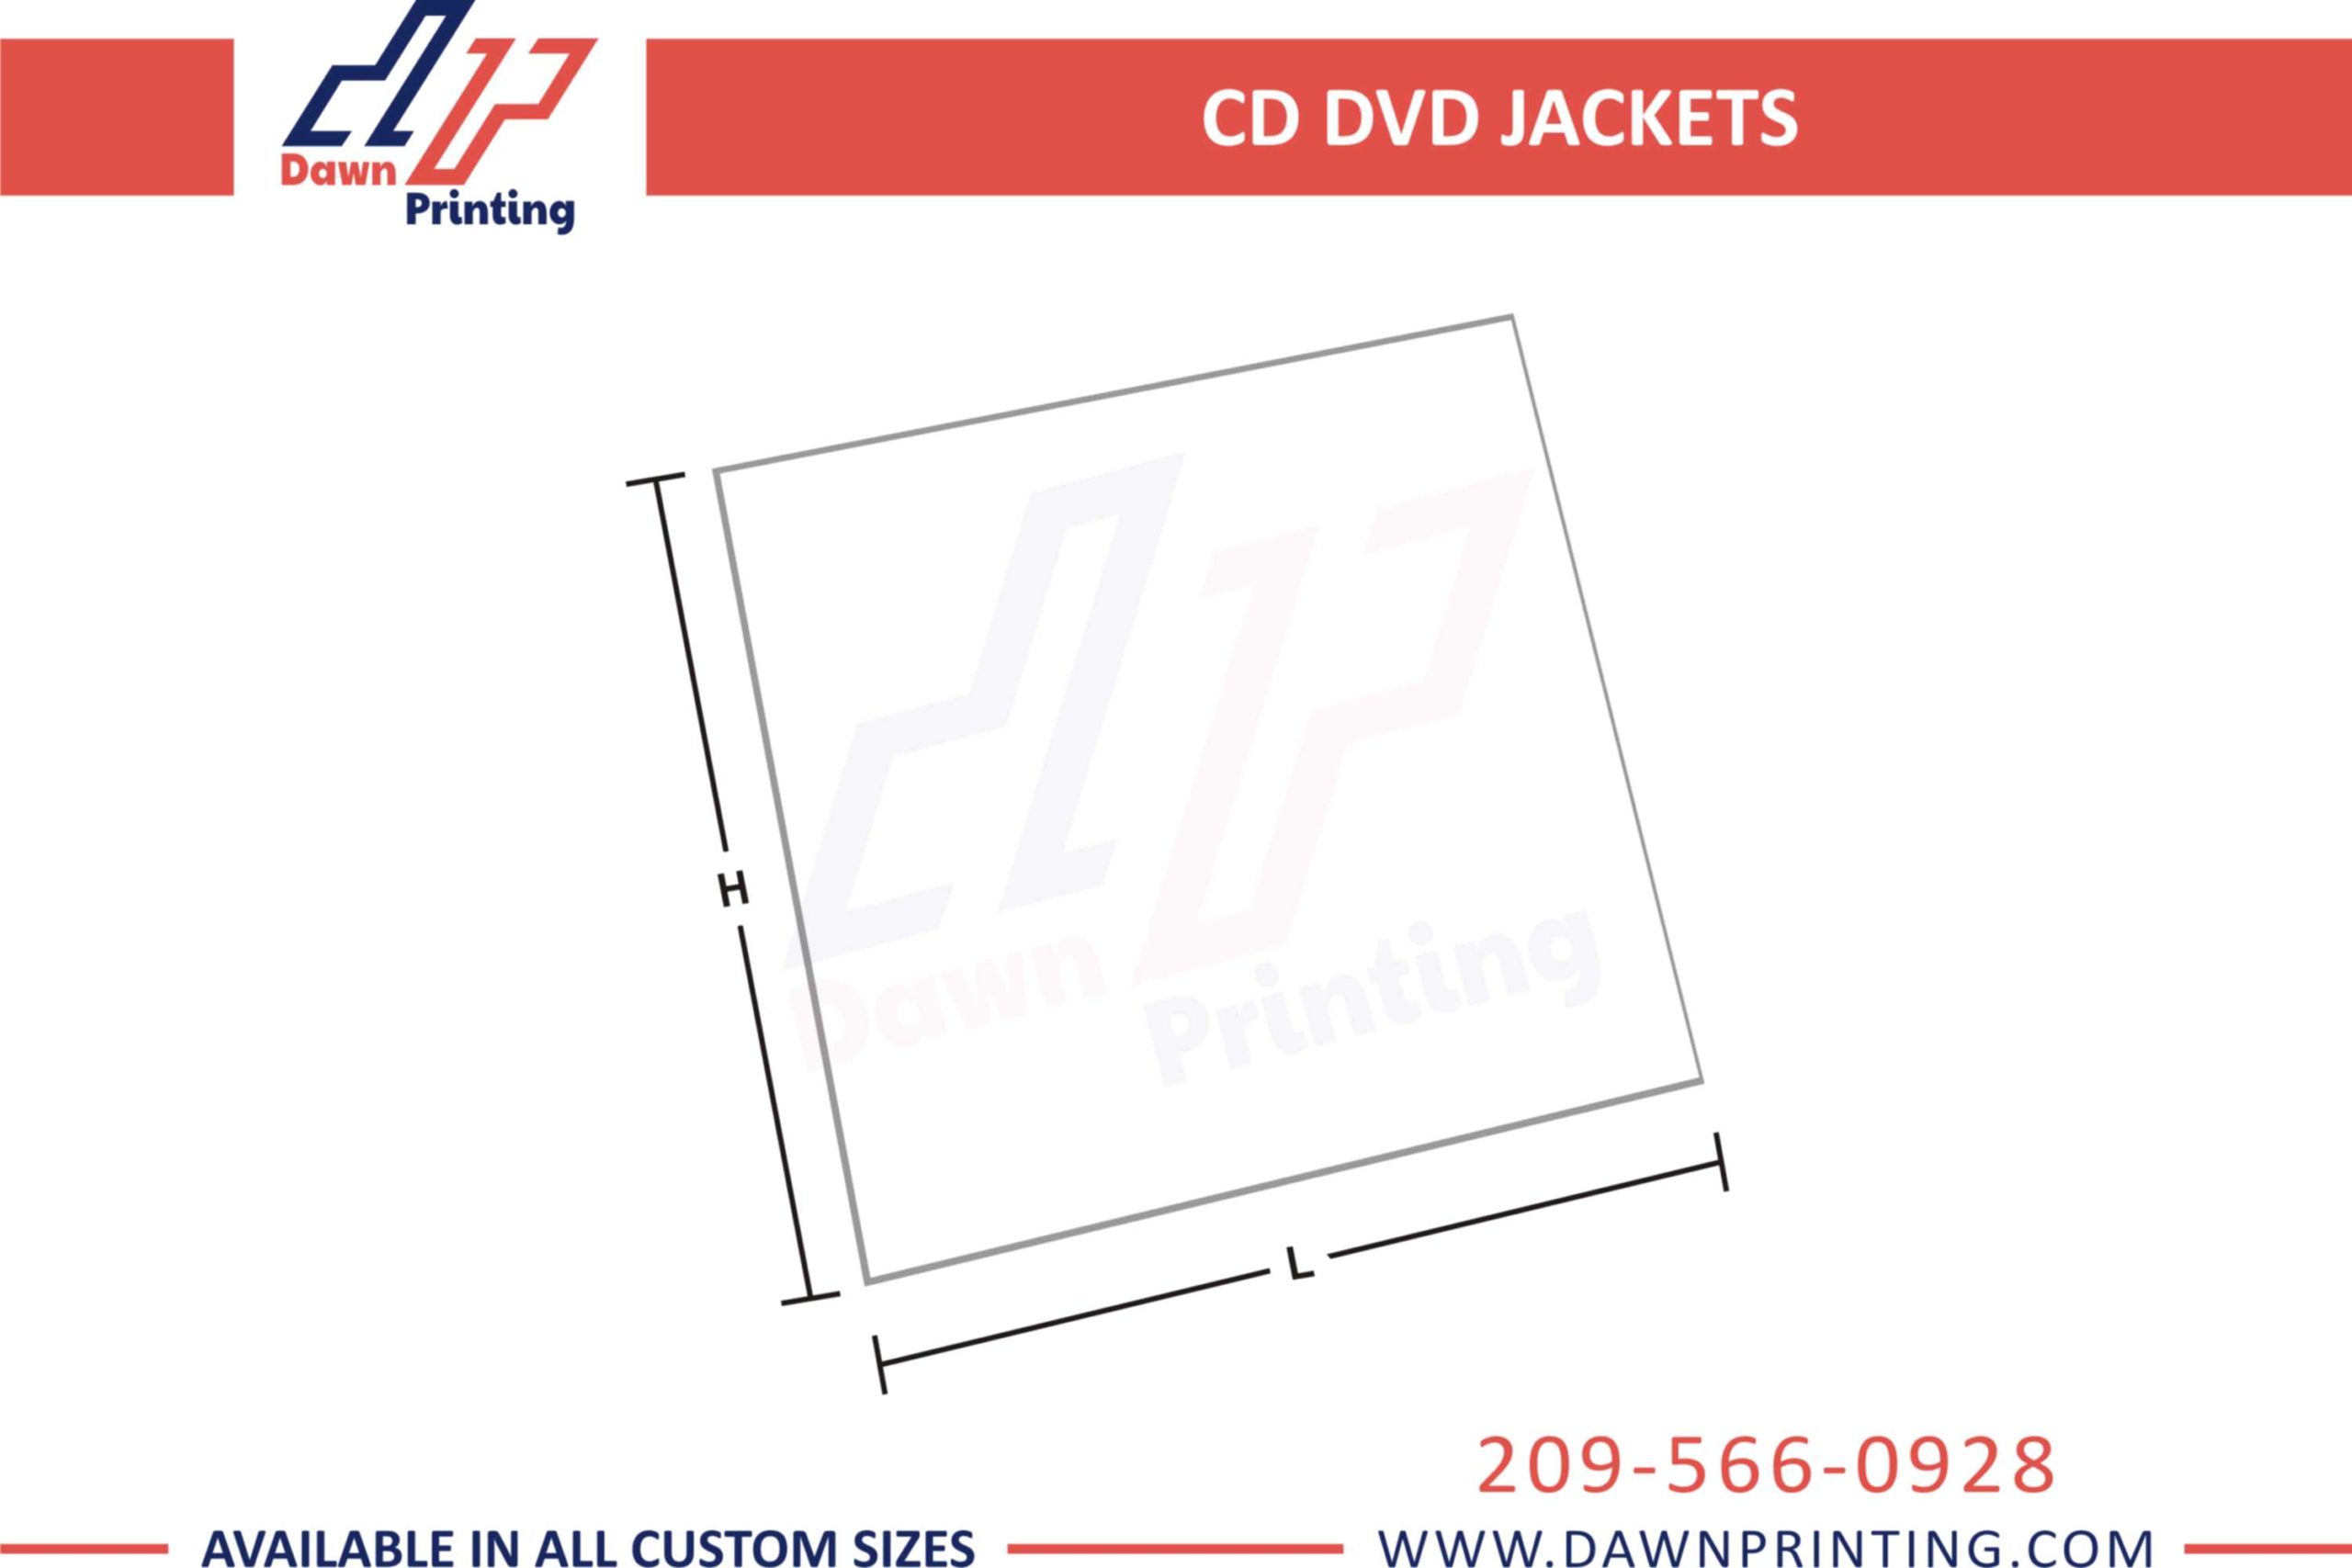 3D CD DVD Jackets - Dawn Printing